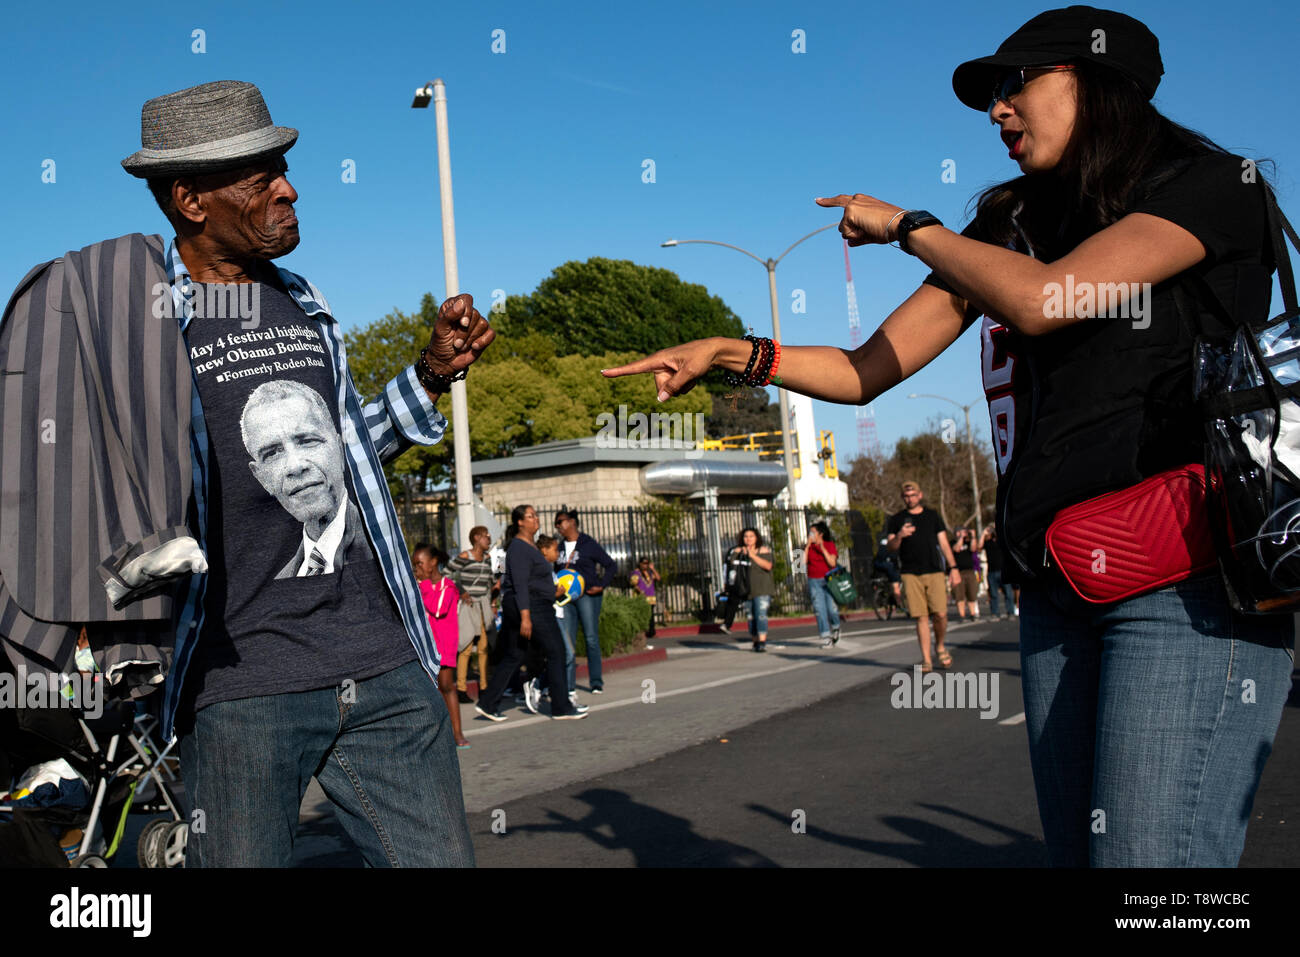 Vu les gens s'amuser pendant le festival. Les gens se rassemblent dans le cadre d'un festival pour célébrer le changement de route de rodéo Boulevard Obama, en l'honneur de l'ancien président américain Barack Obama à Los Angeles, Californie. Banque D'Images